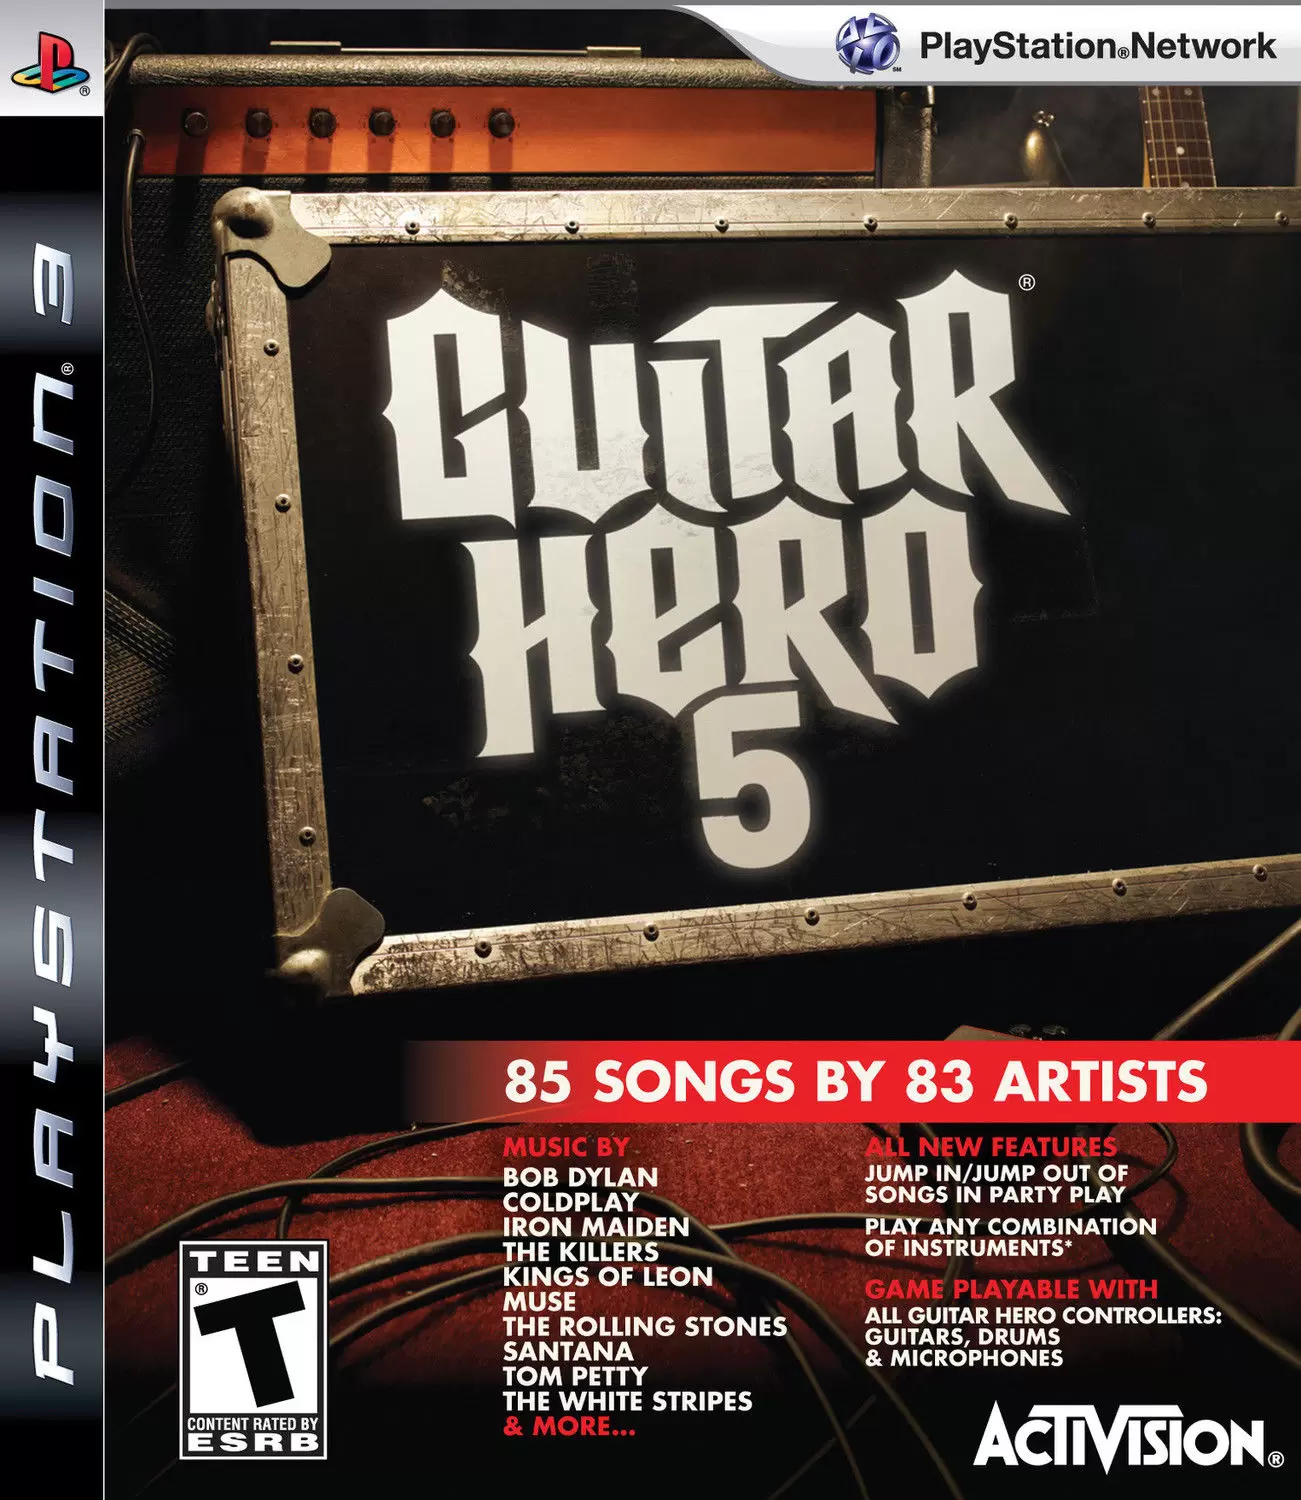 PS3 Games - Guitar Hero 5